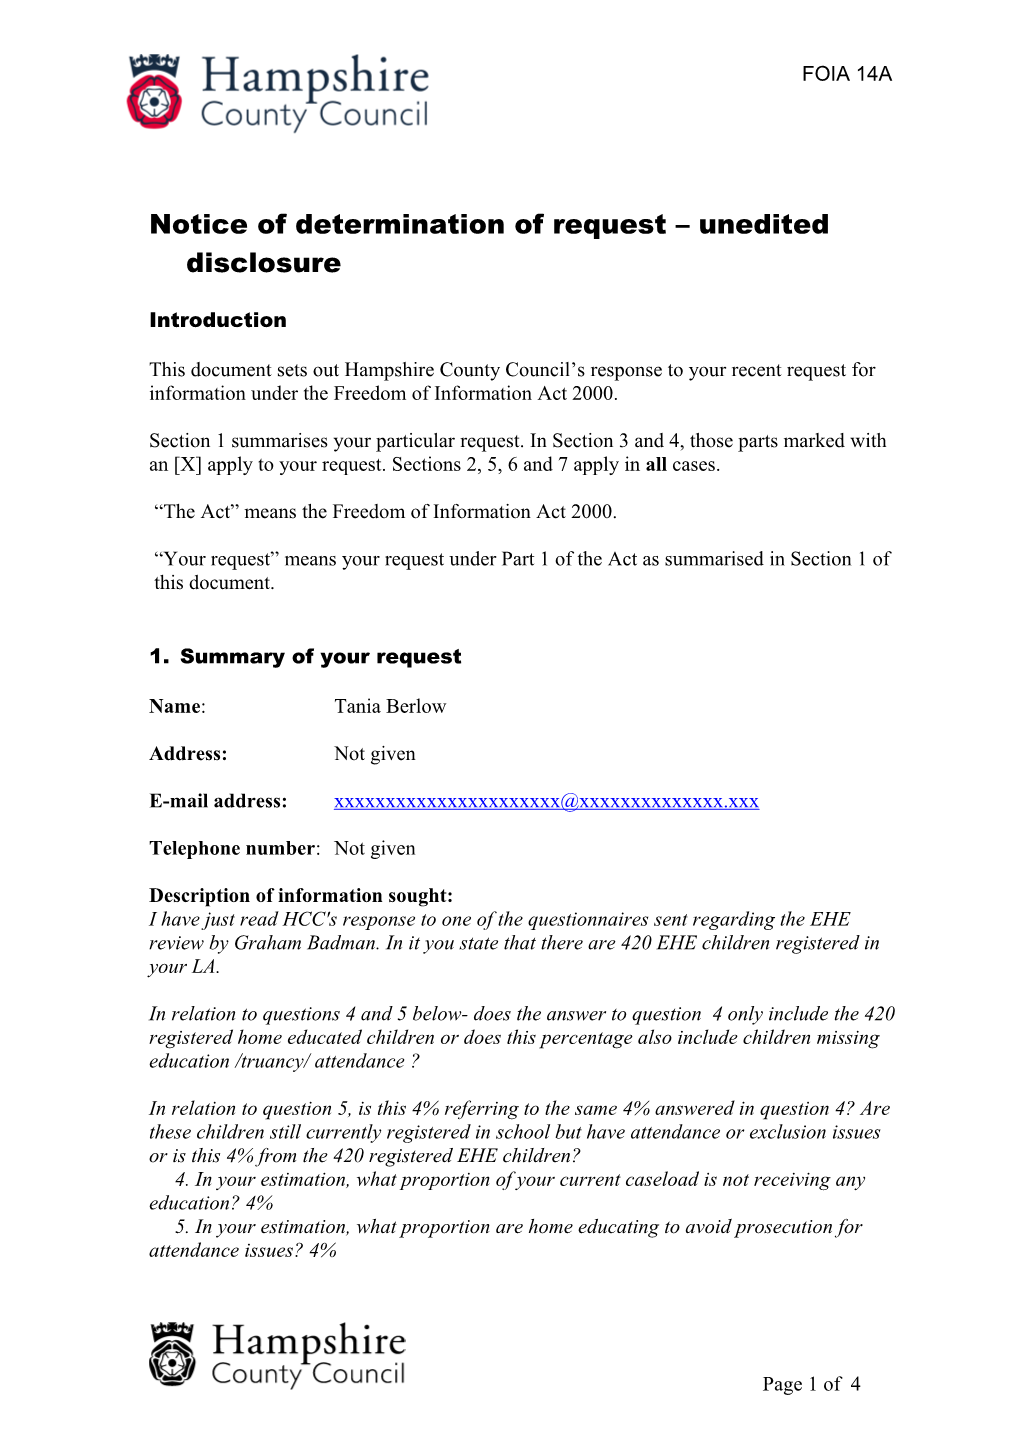 Notice of Determination of Request Unedited Disclosure